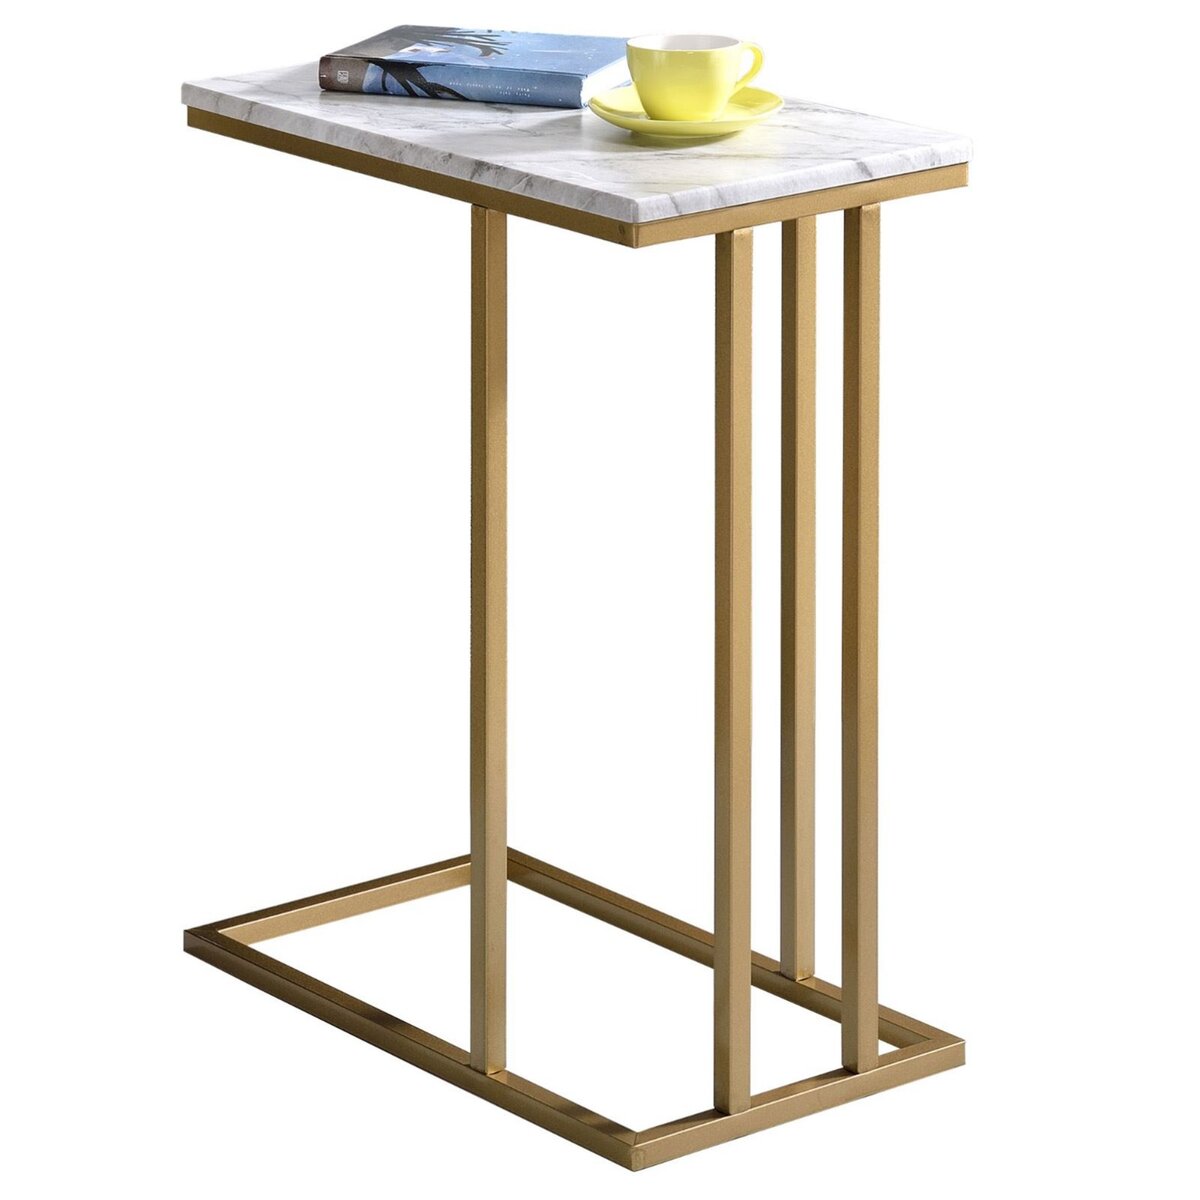 IDIMEX Bout de canapé CARLOTA en métal doré et plateau rectangulaire en MDF décor marbre blanc, table d'appoint table à café table basse